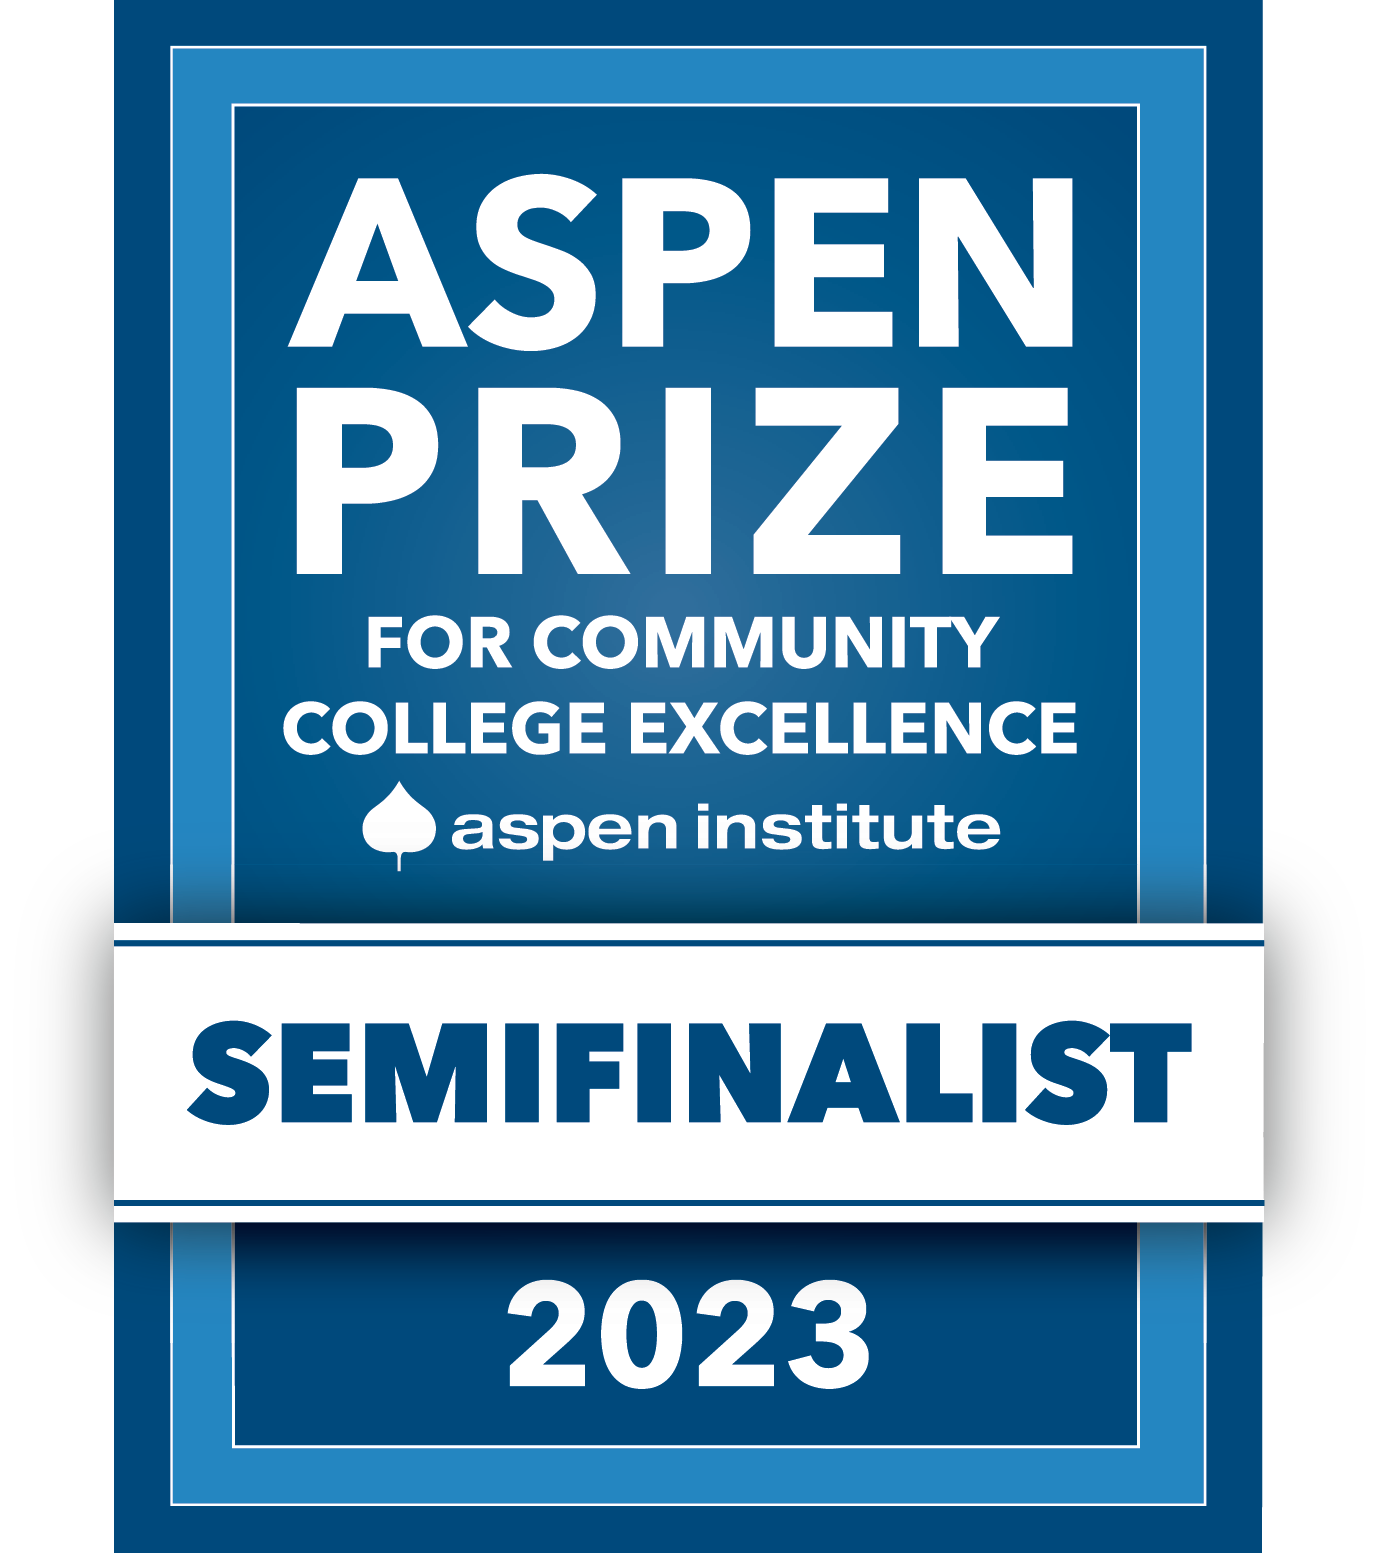 Aspen semifinalist logo